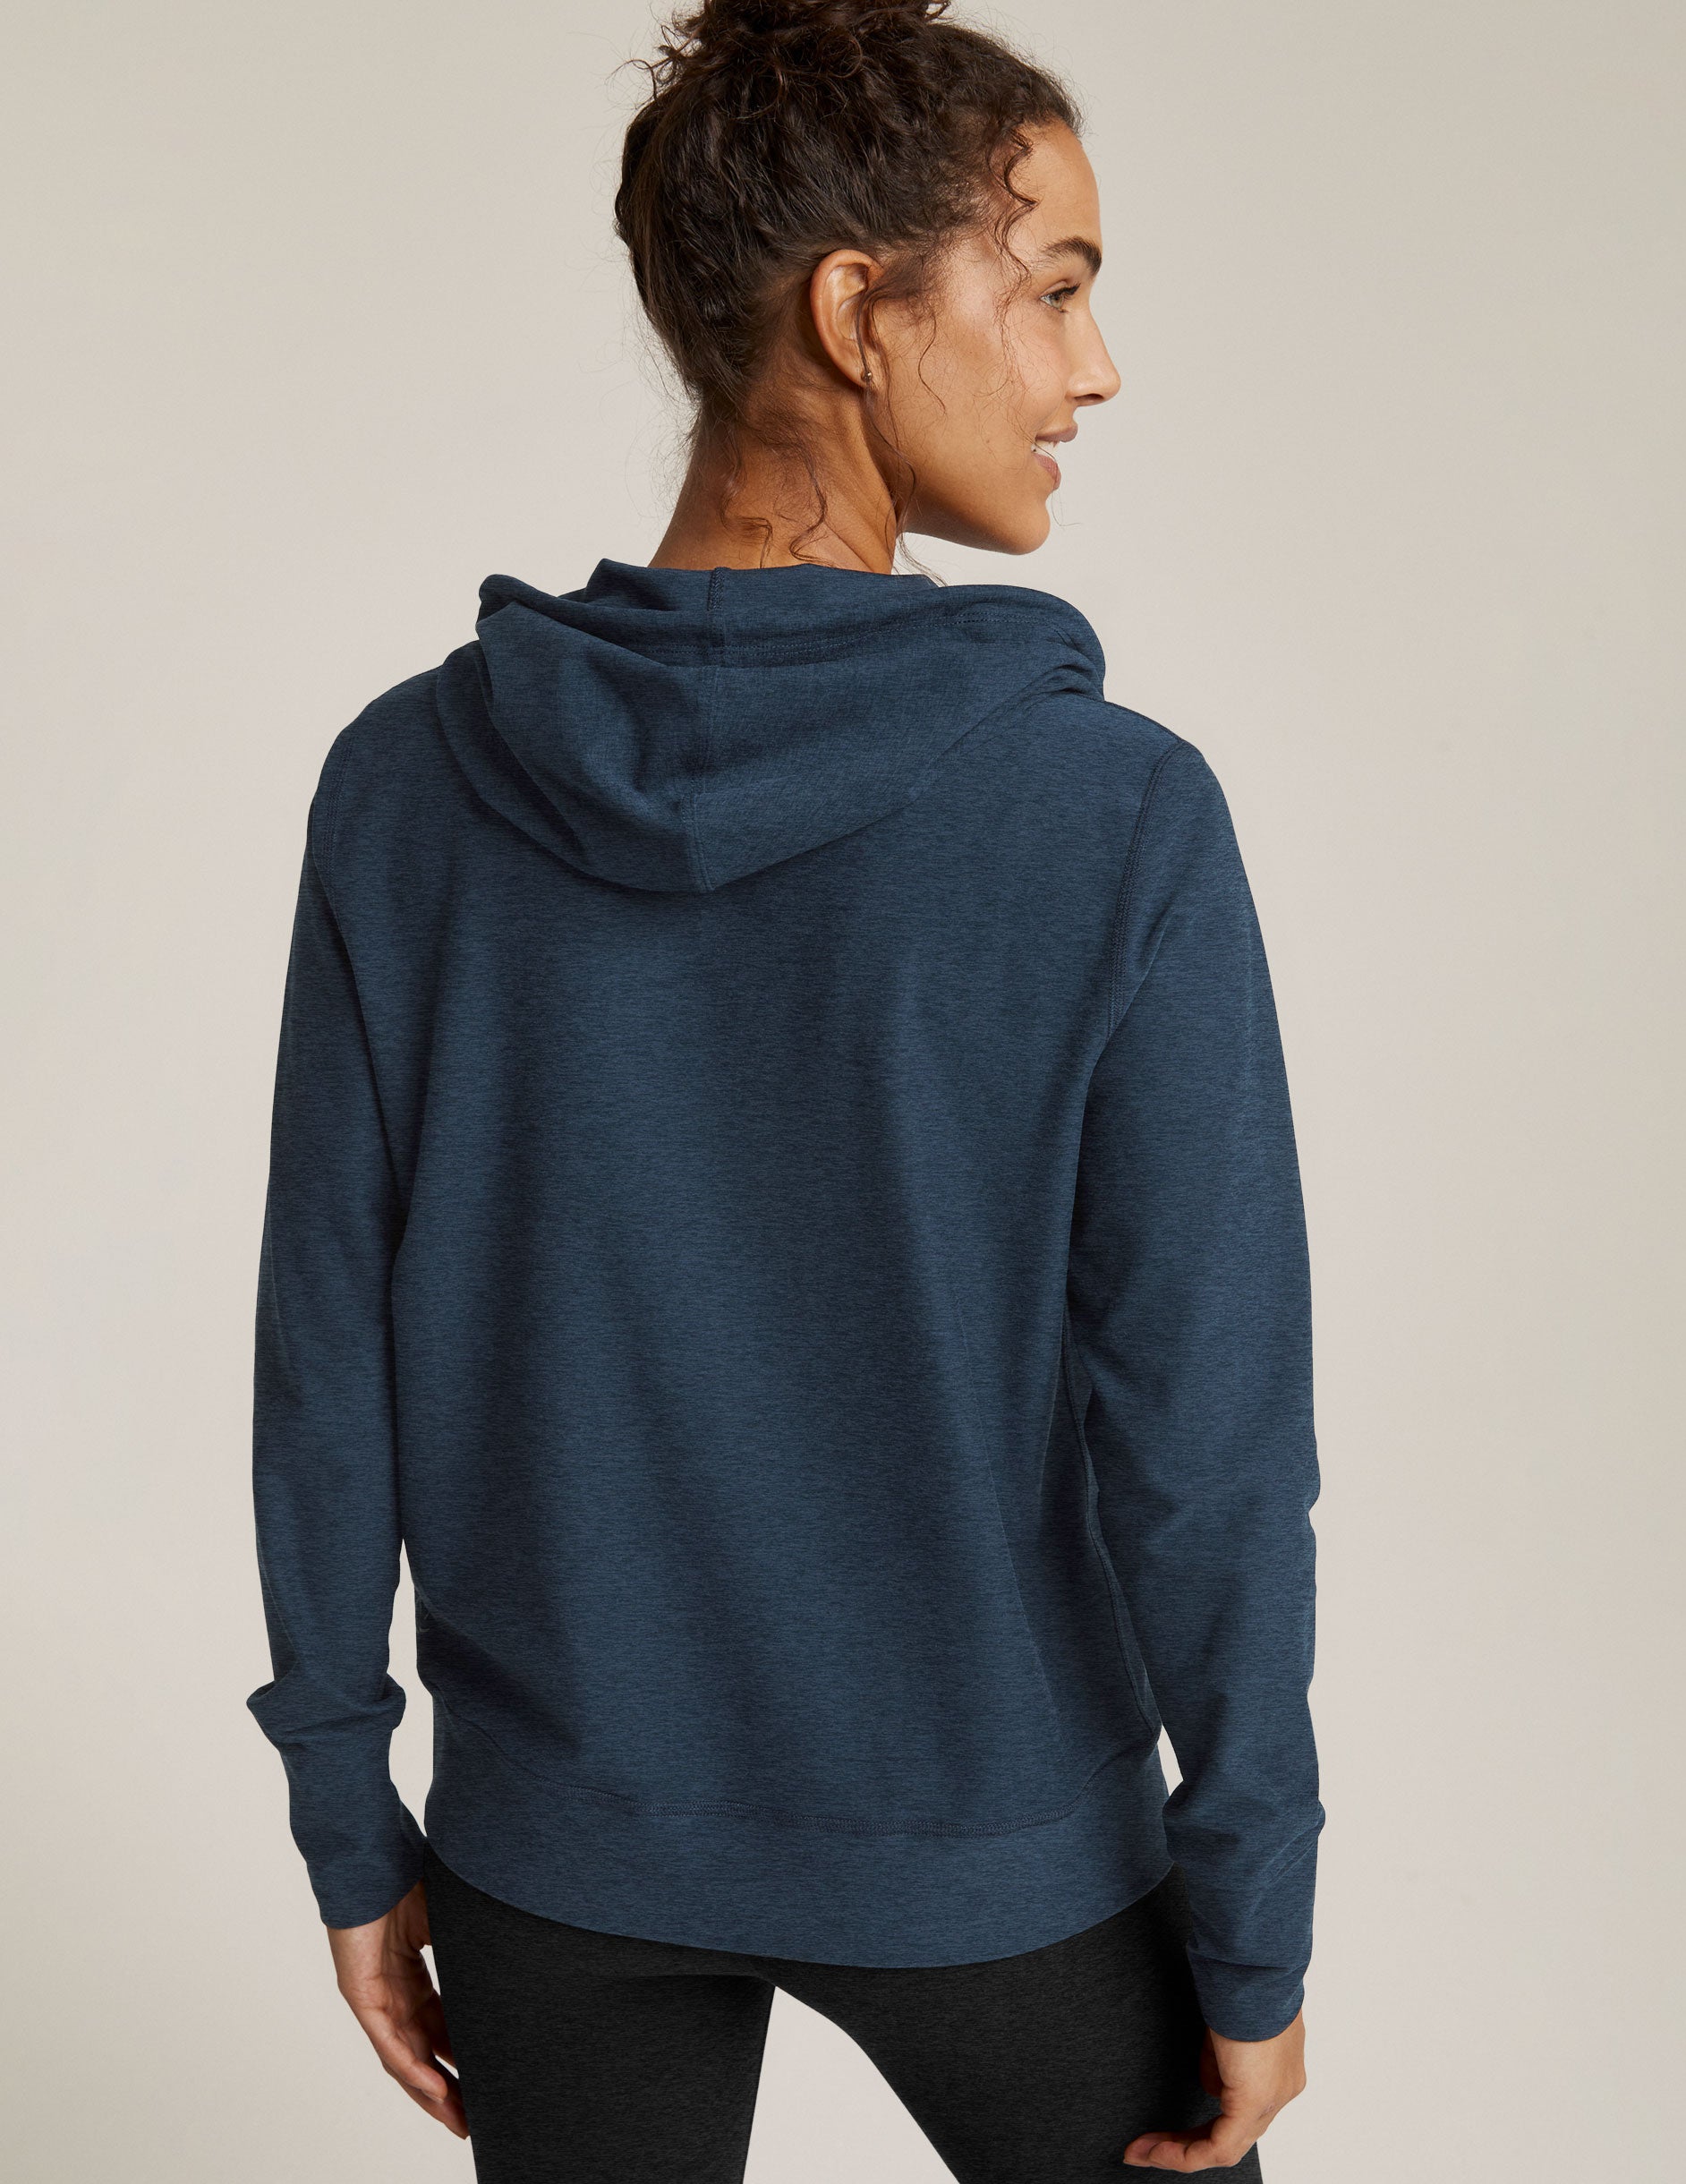 blue zip up hoodie jacket